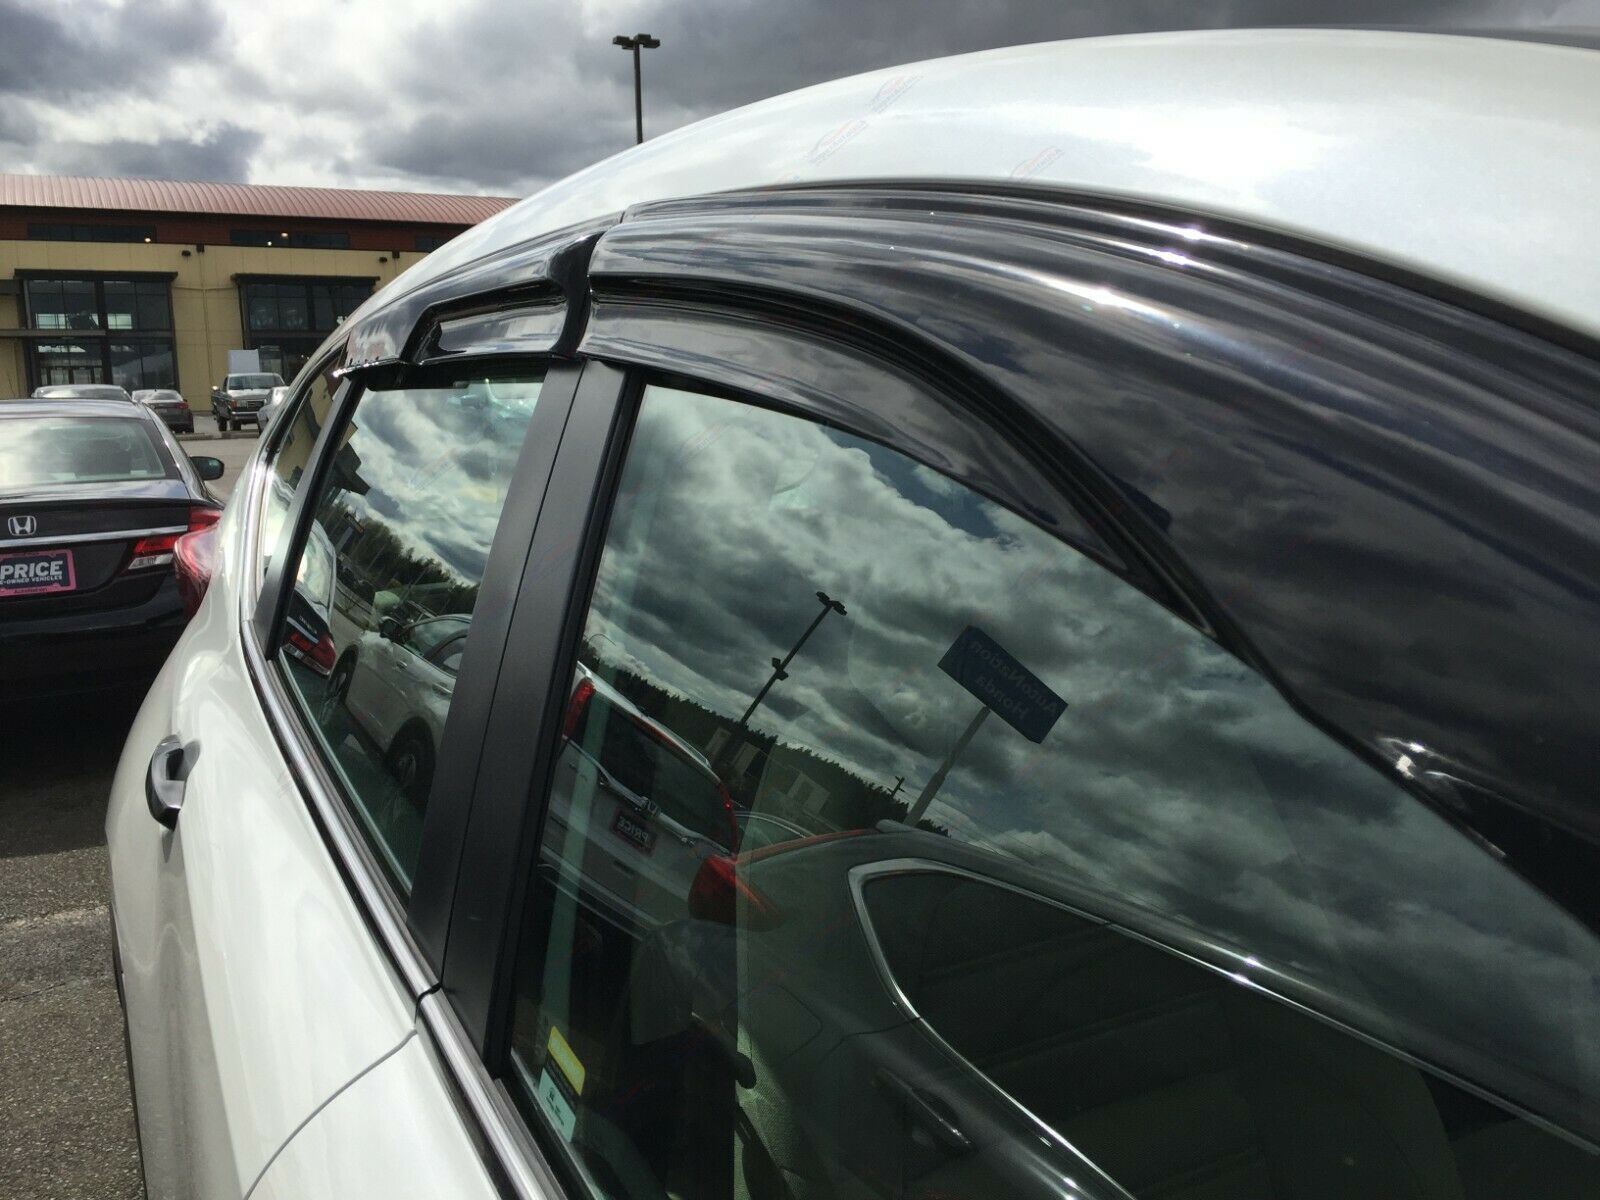 Ajuste 2014-2019 Toyota Corolla 3D Mugen estilo ventilación ventana viseras lluvia sol viento guardias deflectores de sombra